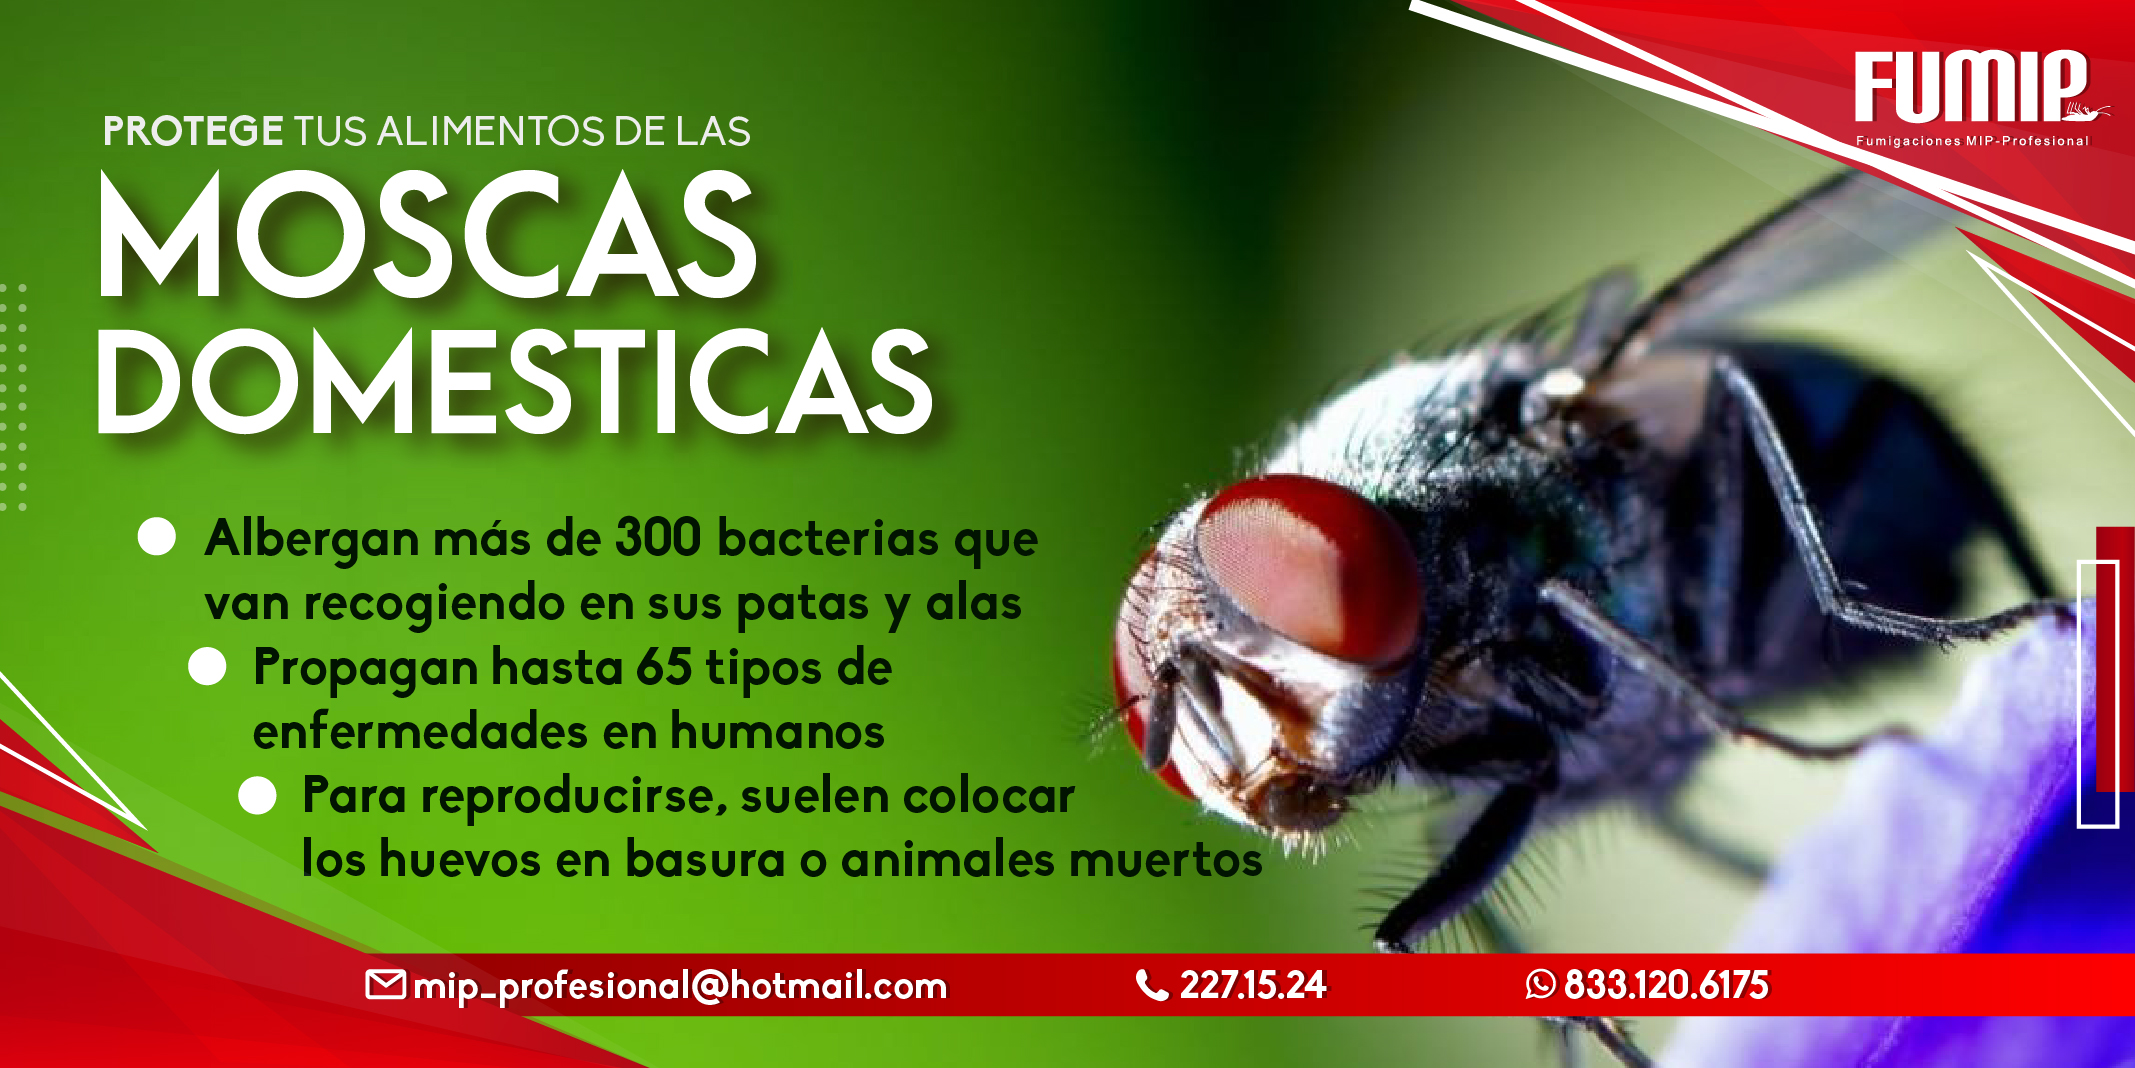 Fumigaciones MIP Profesional on Twitter: "➡️Las moscas transportan hasta de gérmenes que van recogiendo y propagando hasta 65 tipos de enfermedades. ✓Protege tus alimentos las moscas! 🪰🪰🪰 ¡Comunícate con